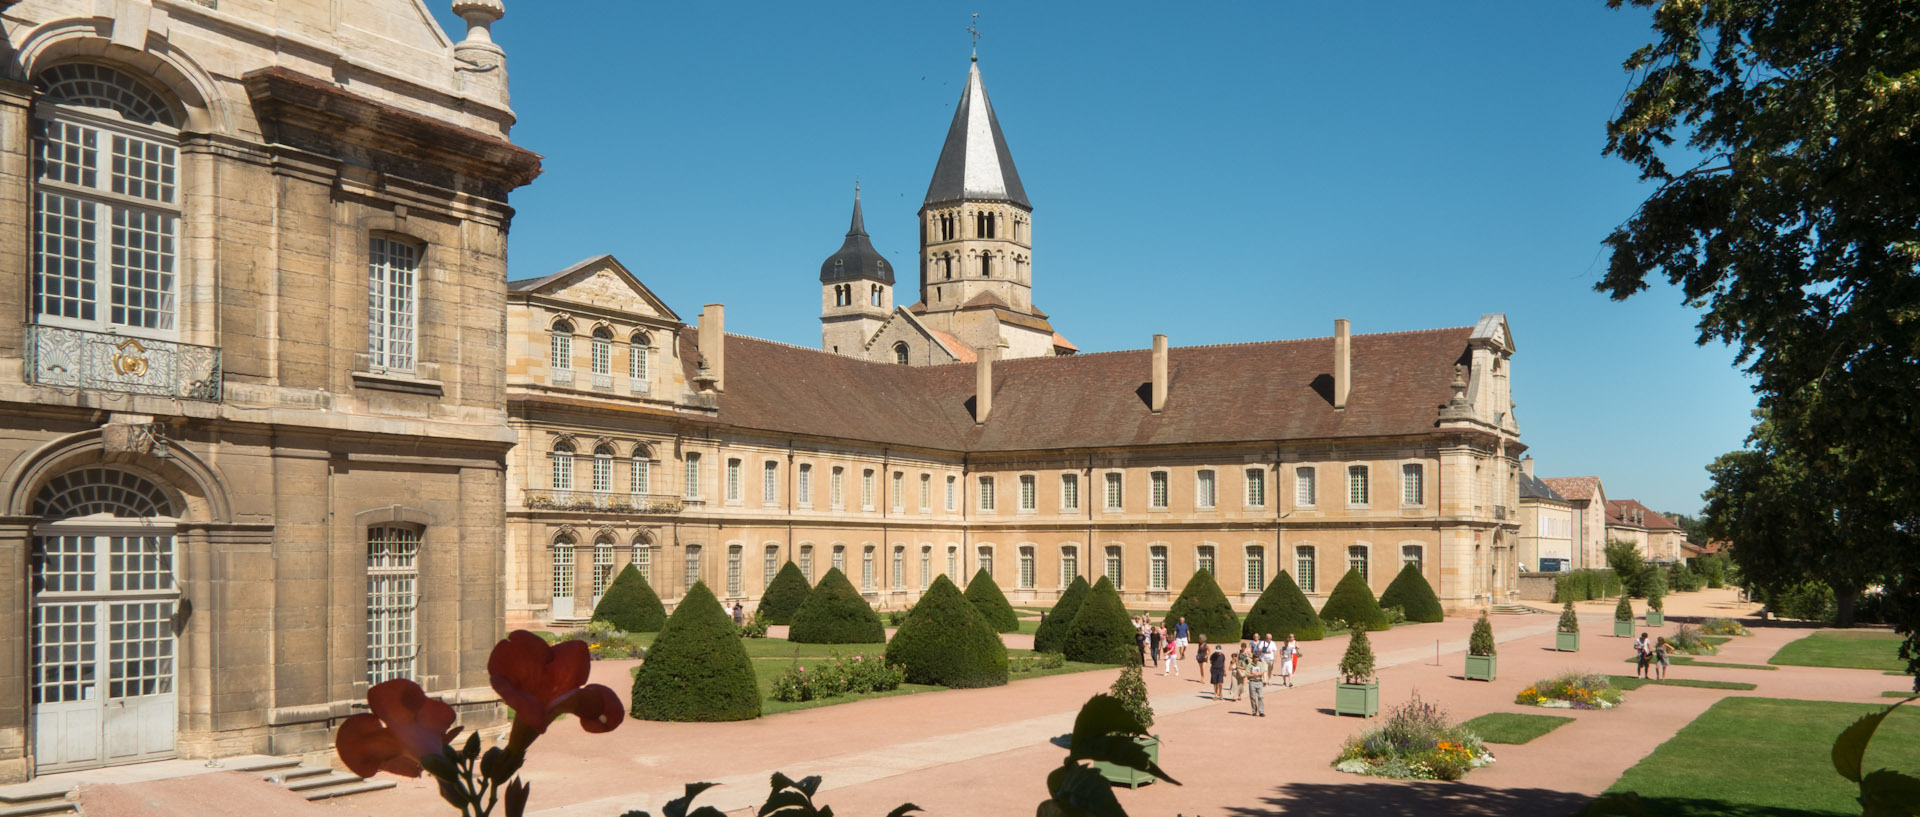 L'Ecole d'arts et métiers et l'abbaye de Cluny.